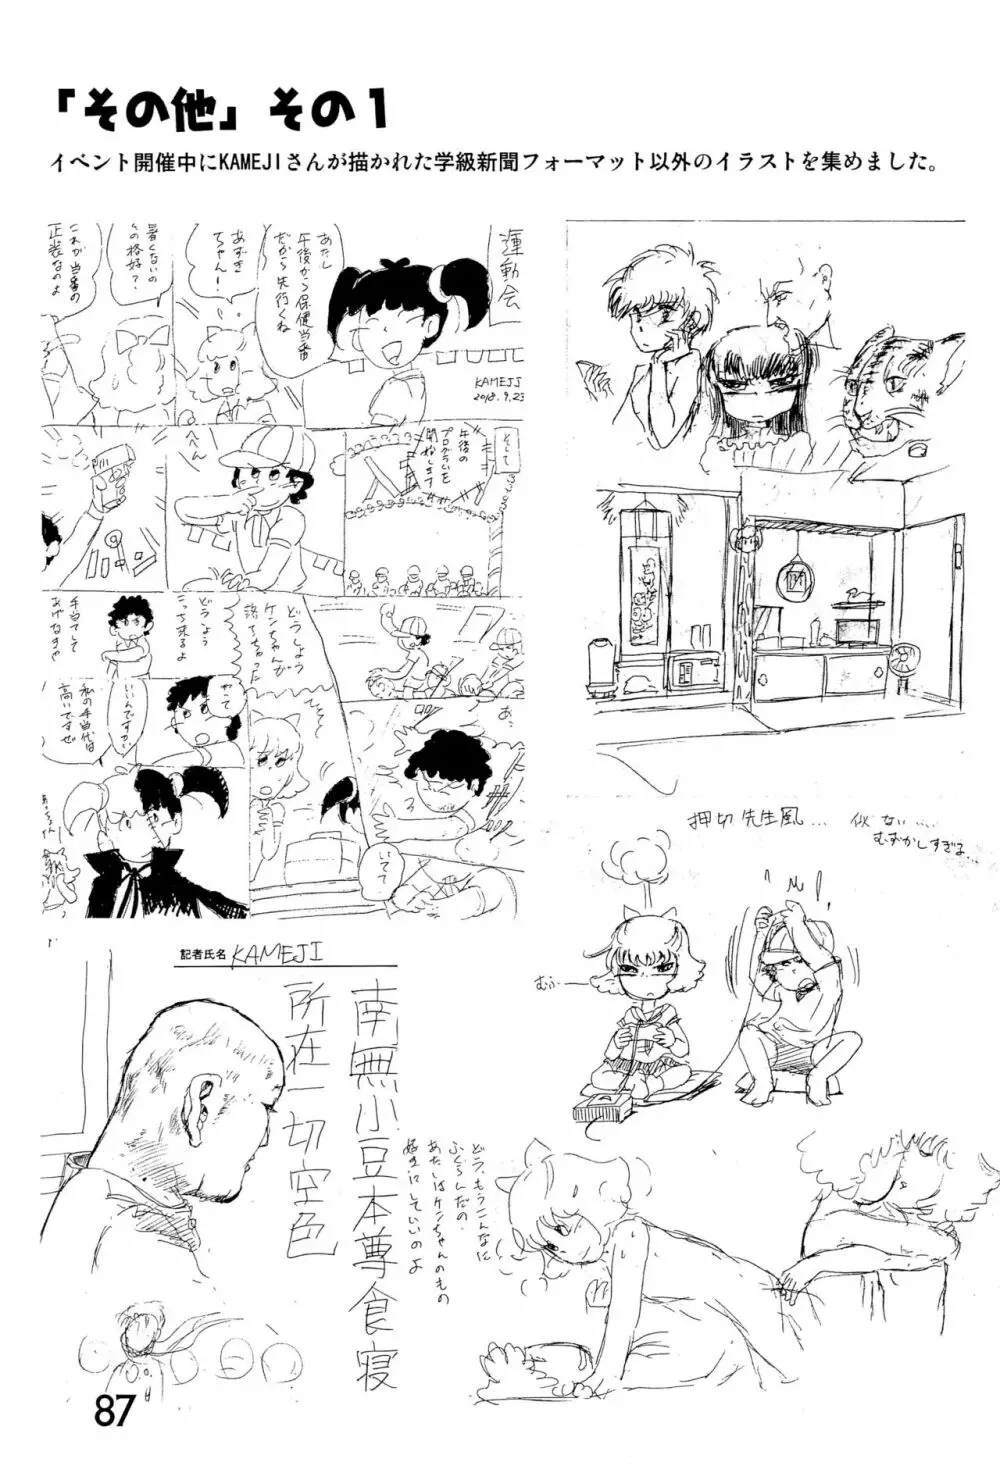 みなみ小学校学級新聞2018+号外版 87ページ